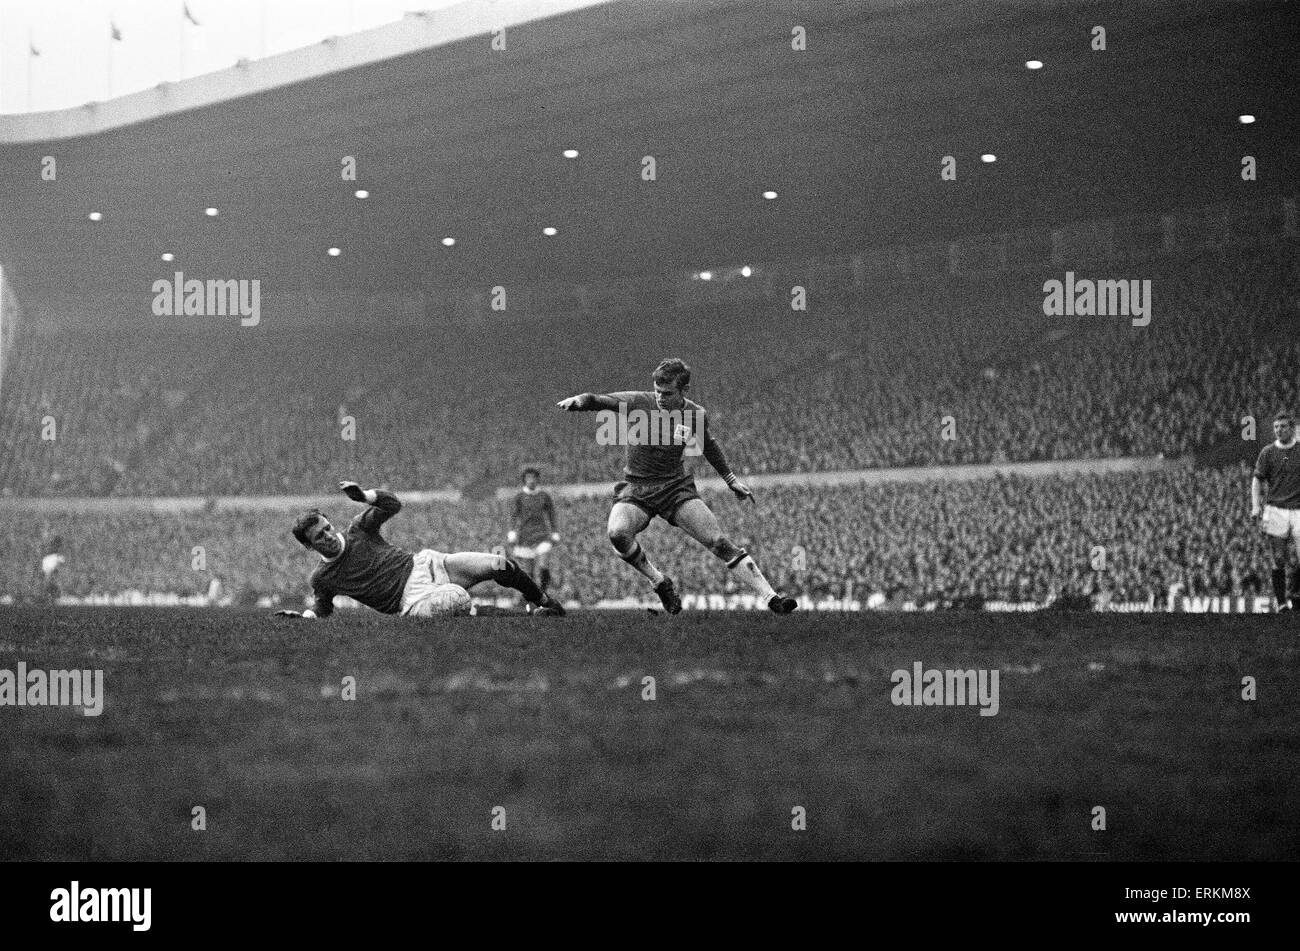 Englische League Division One Spiel im Old Trafford. Manchester United 1 V Nottingham Forest 0. Wald-Räuber Joe Baker versucht, vorbei an der anfällig Abbildung von Manchester zu ersticken "Paddy Crerand.  11. Februar 1967. Stockfoto